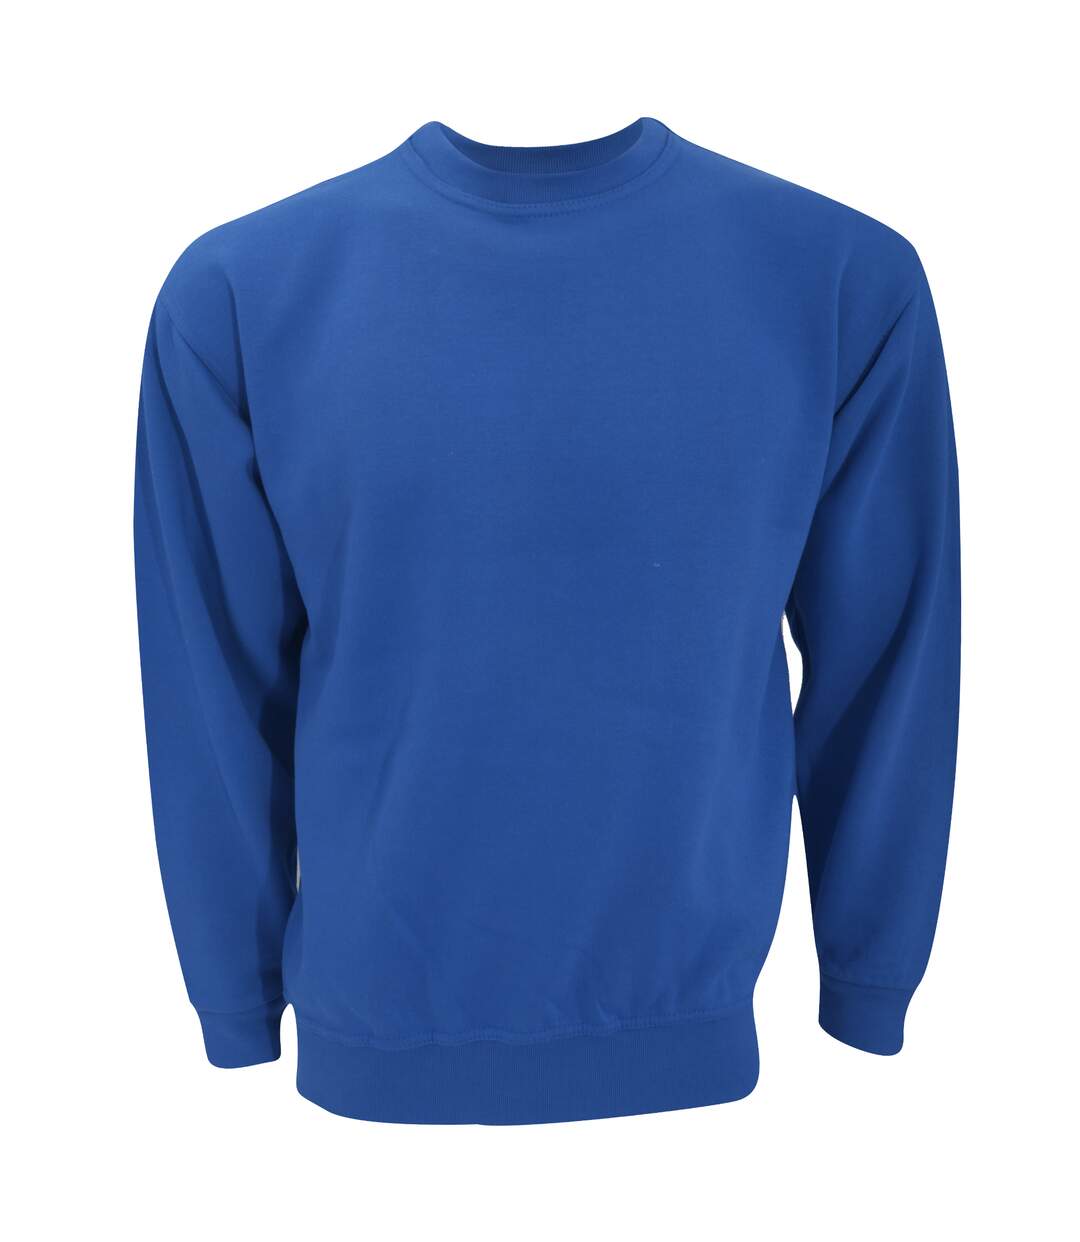 UCC - Sweatshirt uni - Adulte unisexe (Bleu royal) - UTBC1192